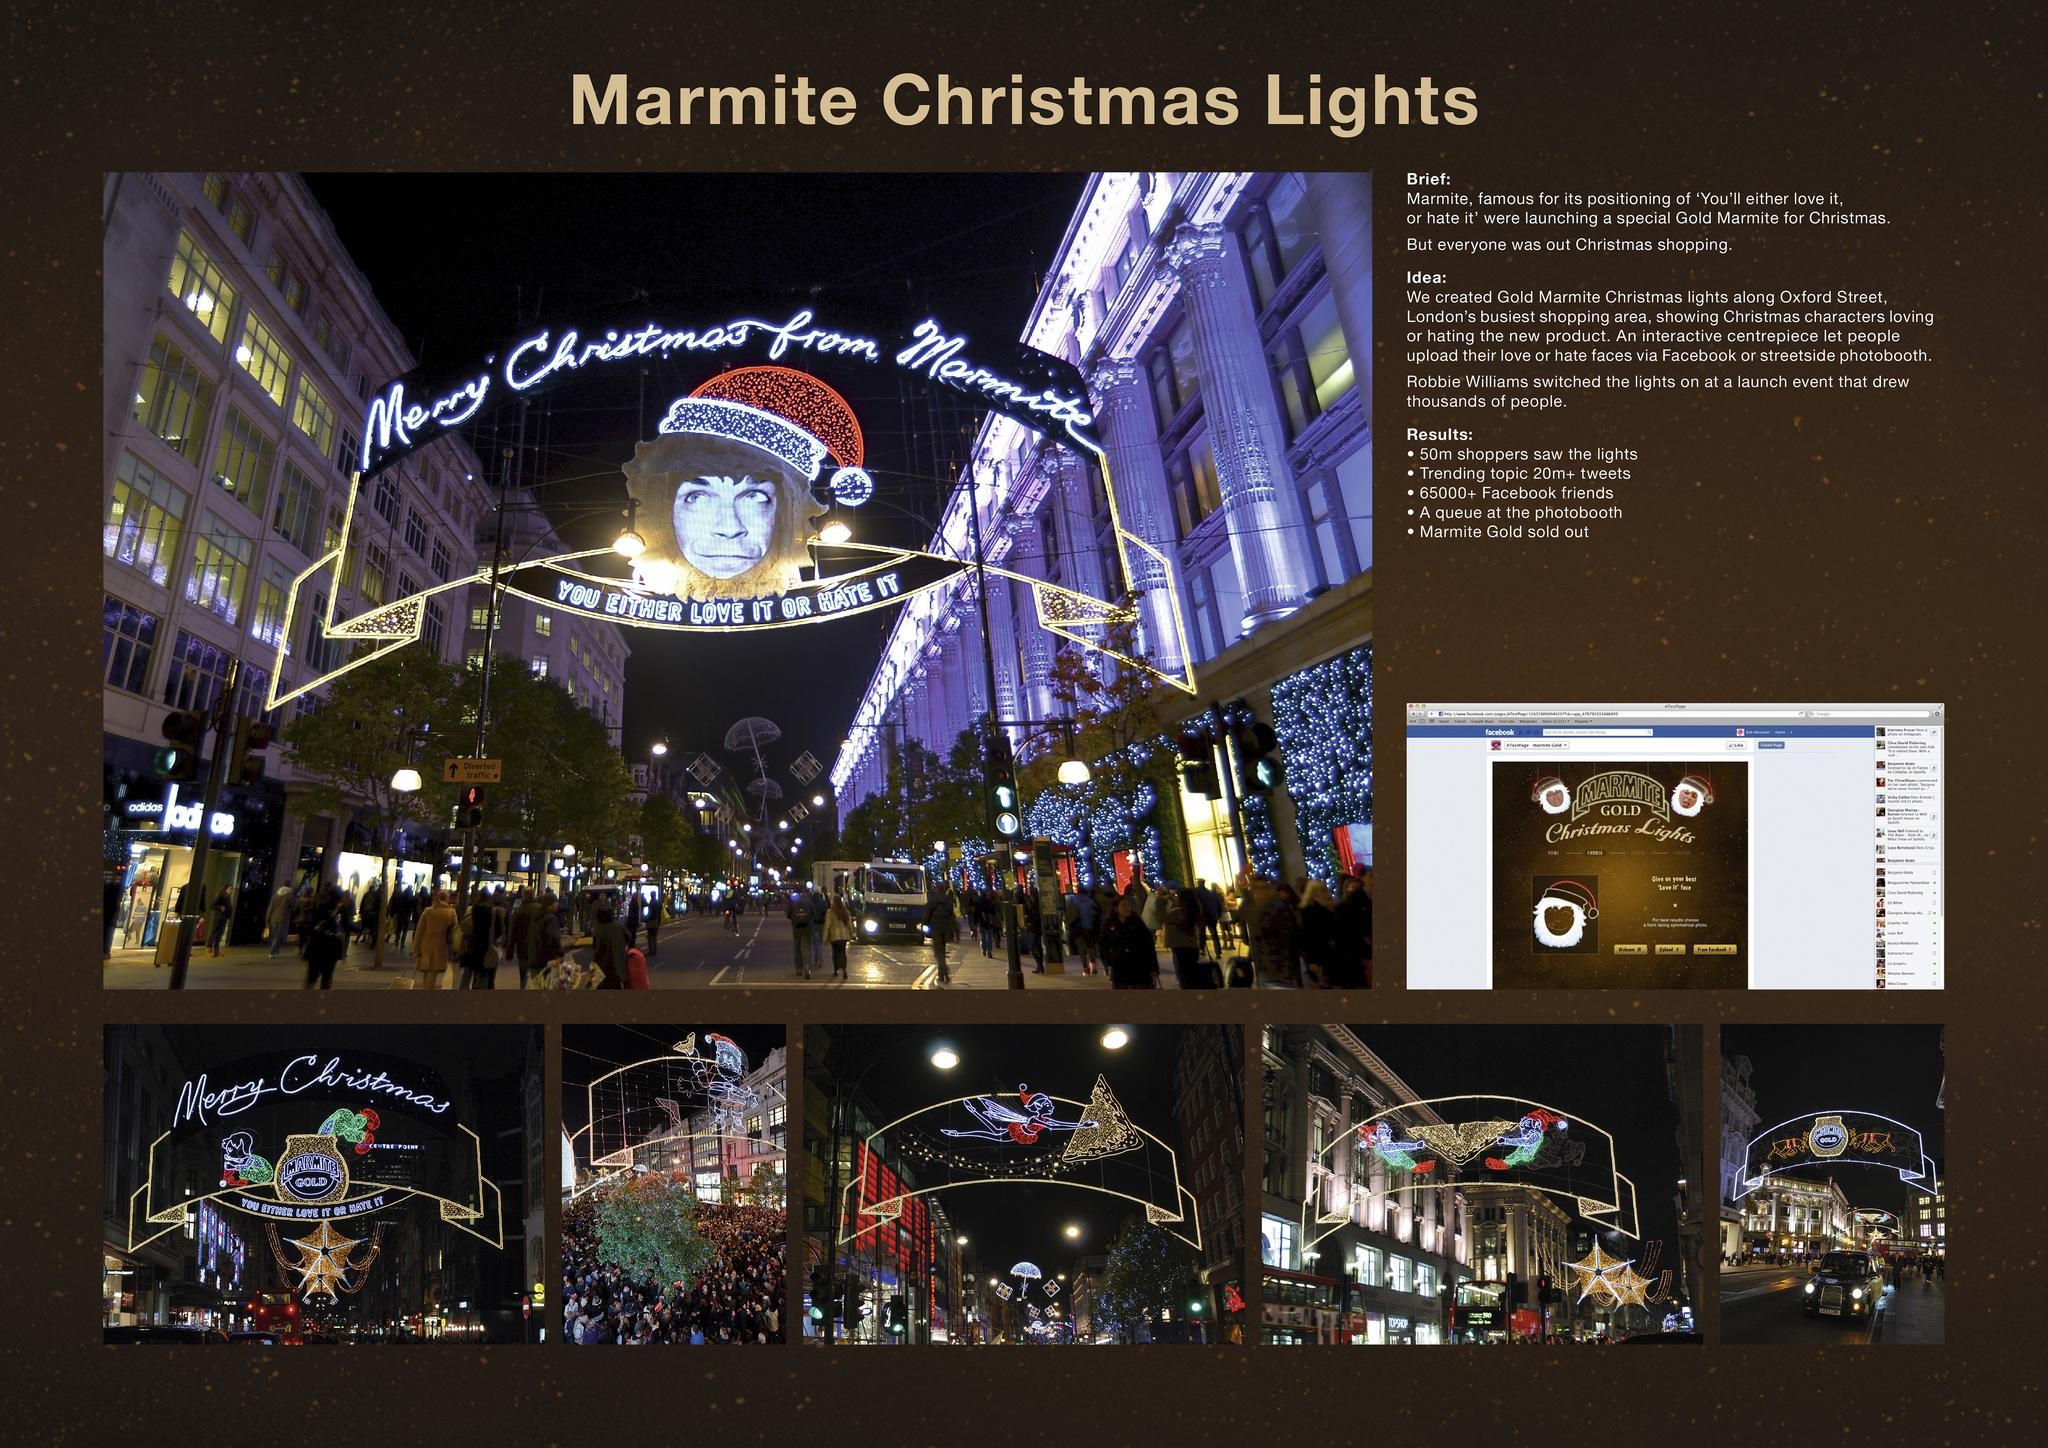 MARMITE CHRISTMAS LIGHTS